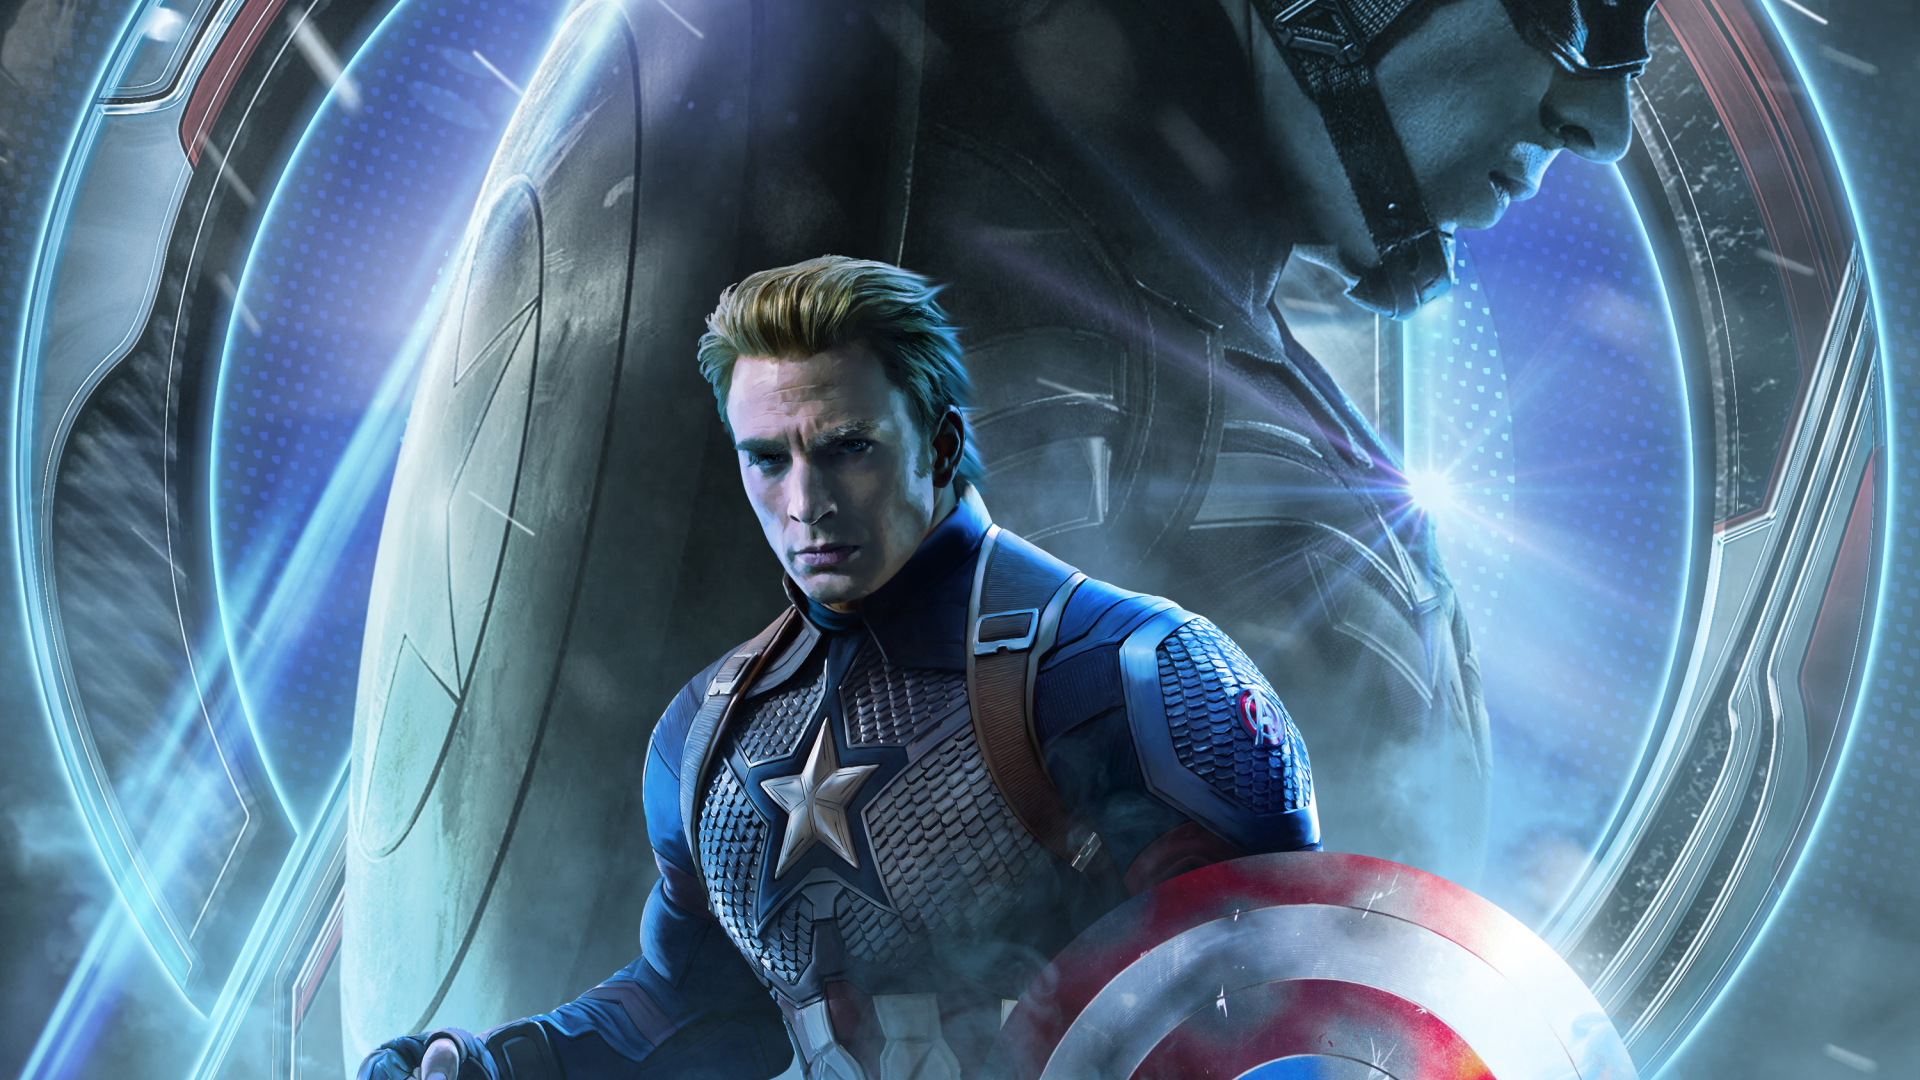 1920x1080 Avengers Endgame Captain America Poster Art 1080P Laptop Full